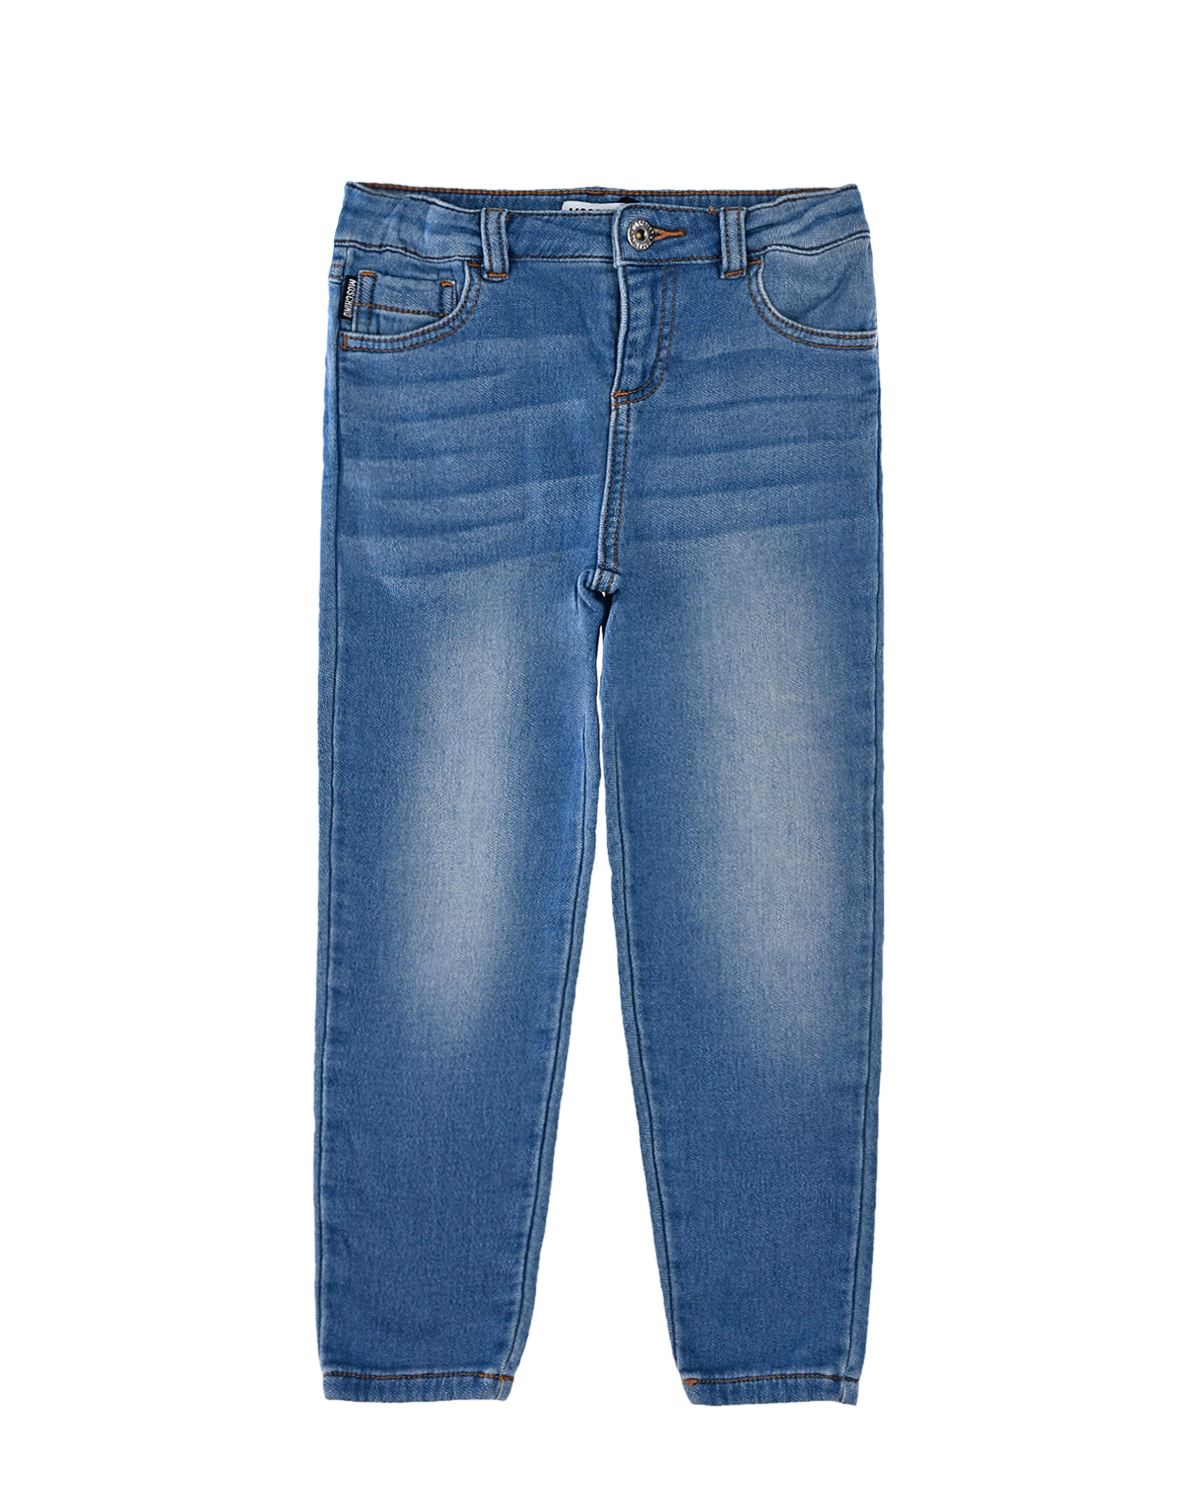 Голубые джинсы с декором на заднем кармане Moschino детские, размер 104, цвет голубой